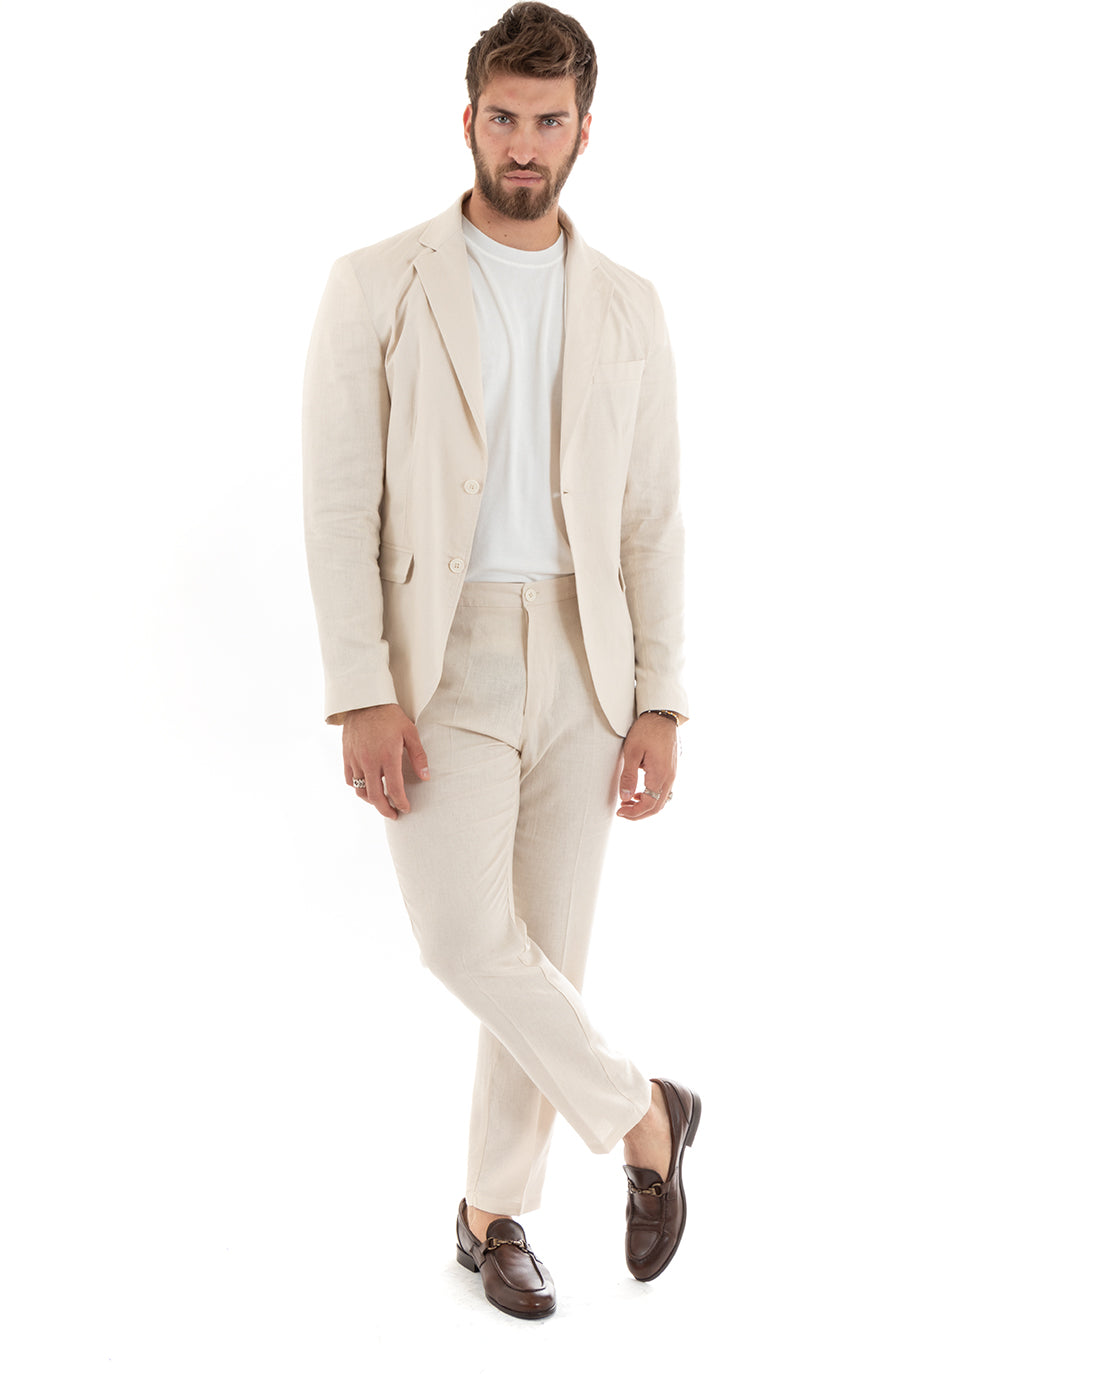 Single Breasted Men's Suit Linen Suit Suit Jacket Trousers Beige Elegant Ceremony GIOSAL-OU2305A